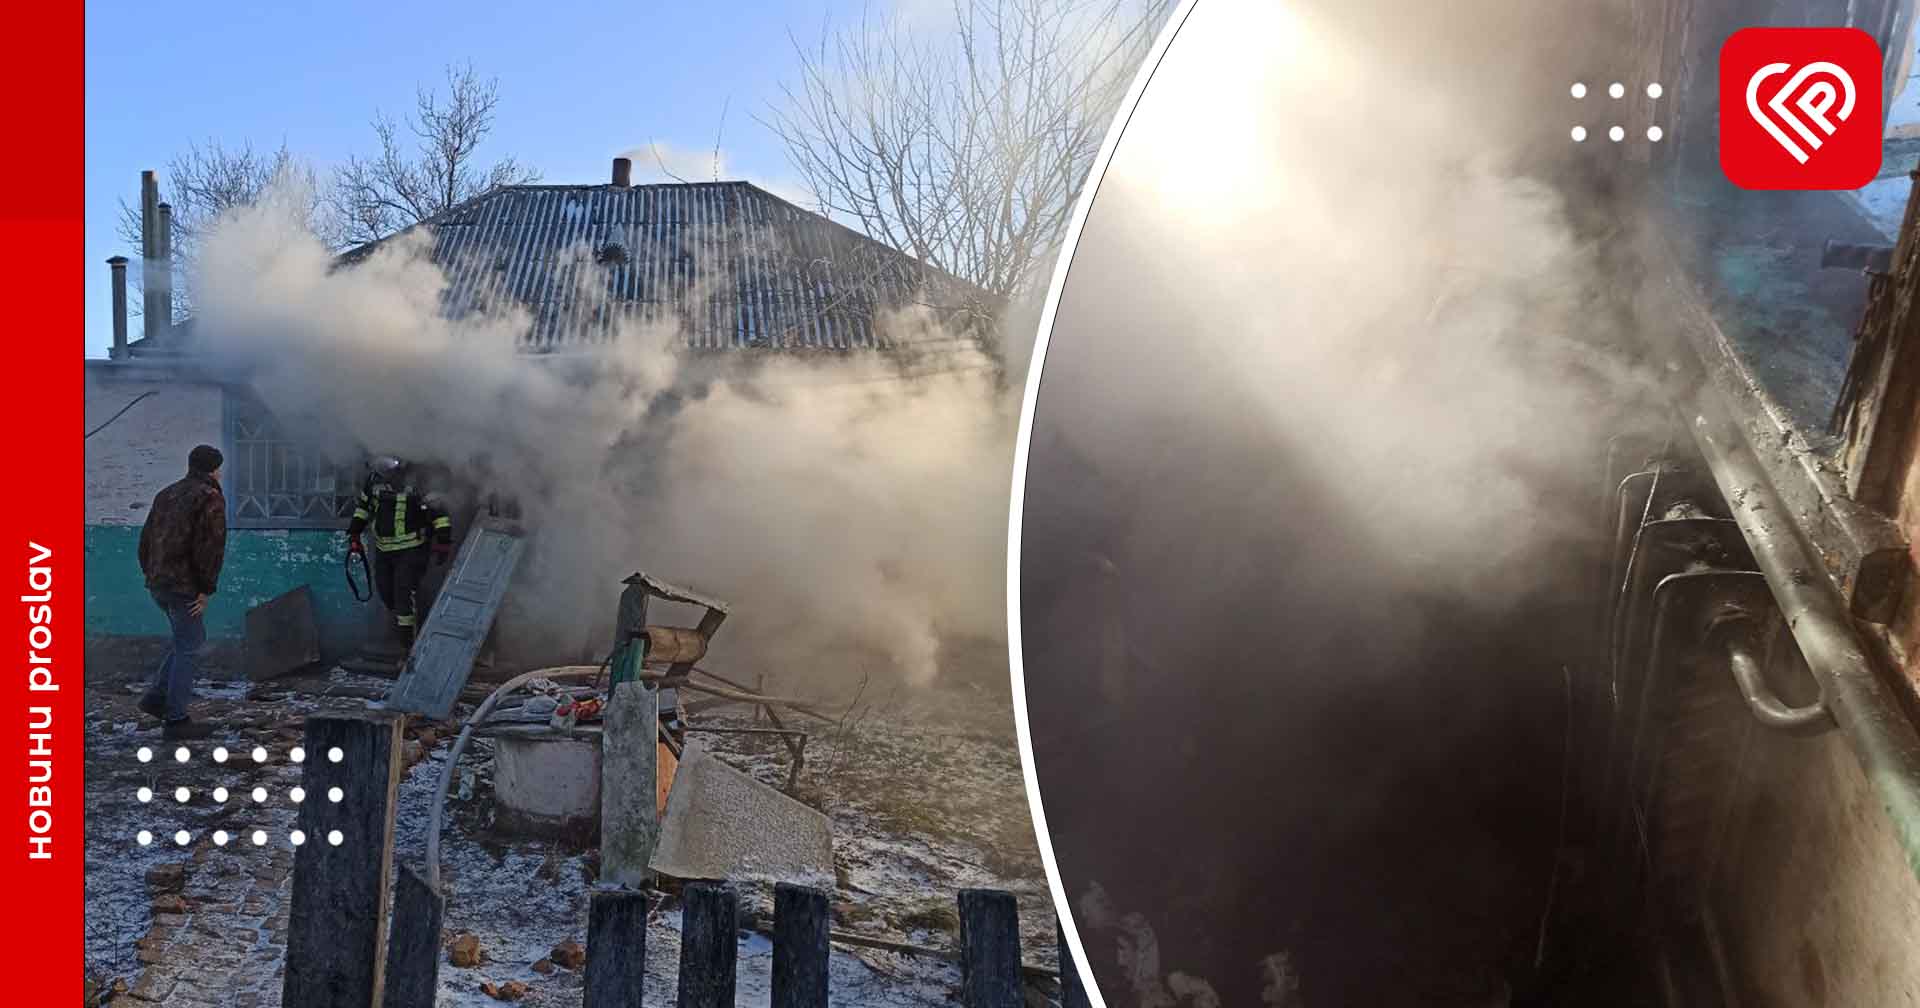 У будинку на Переяславщині сталася пожежа: у кімнаті загорілися речі (фото та відео)